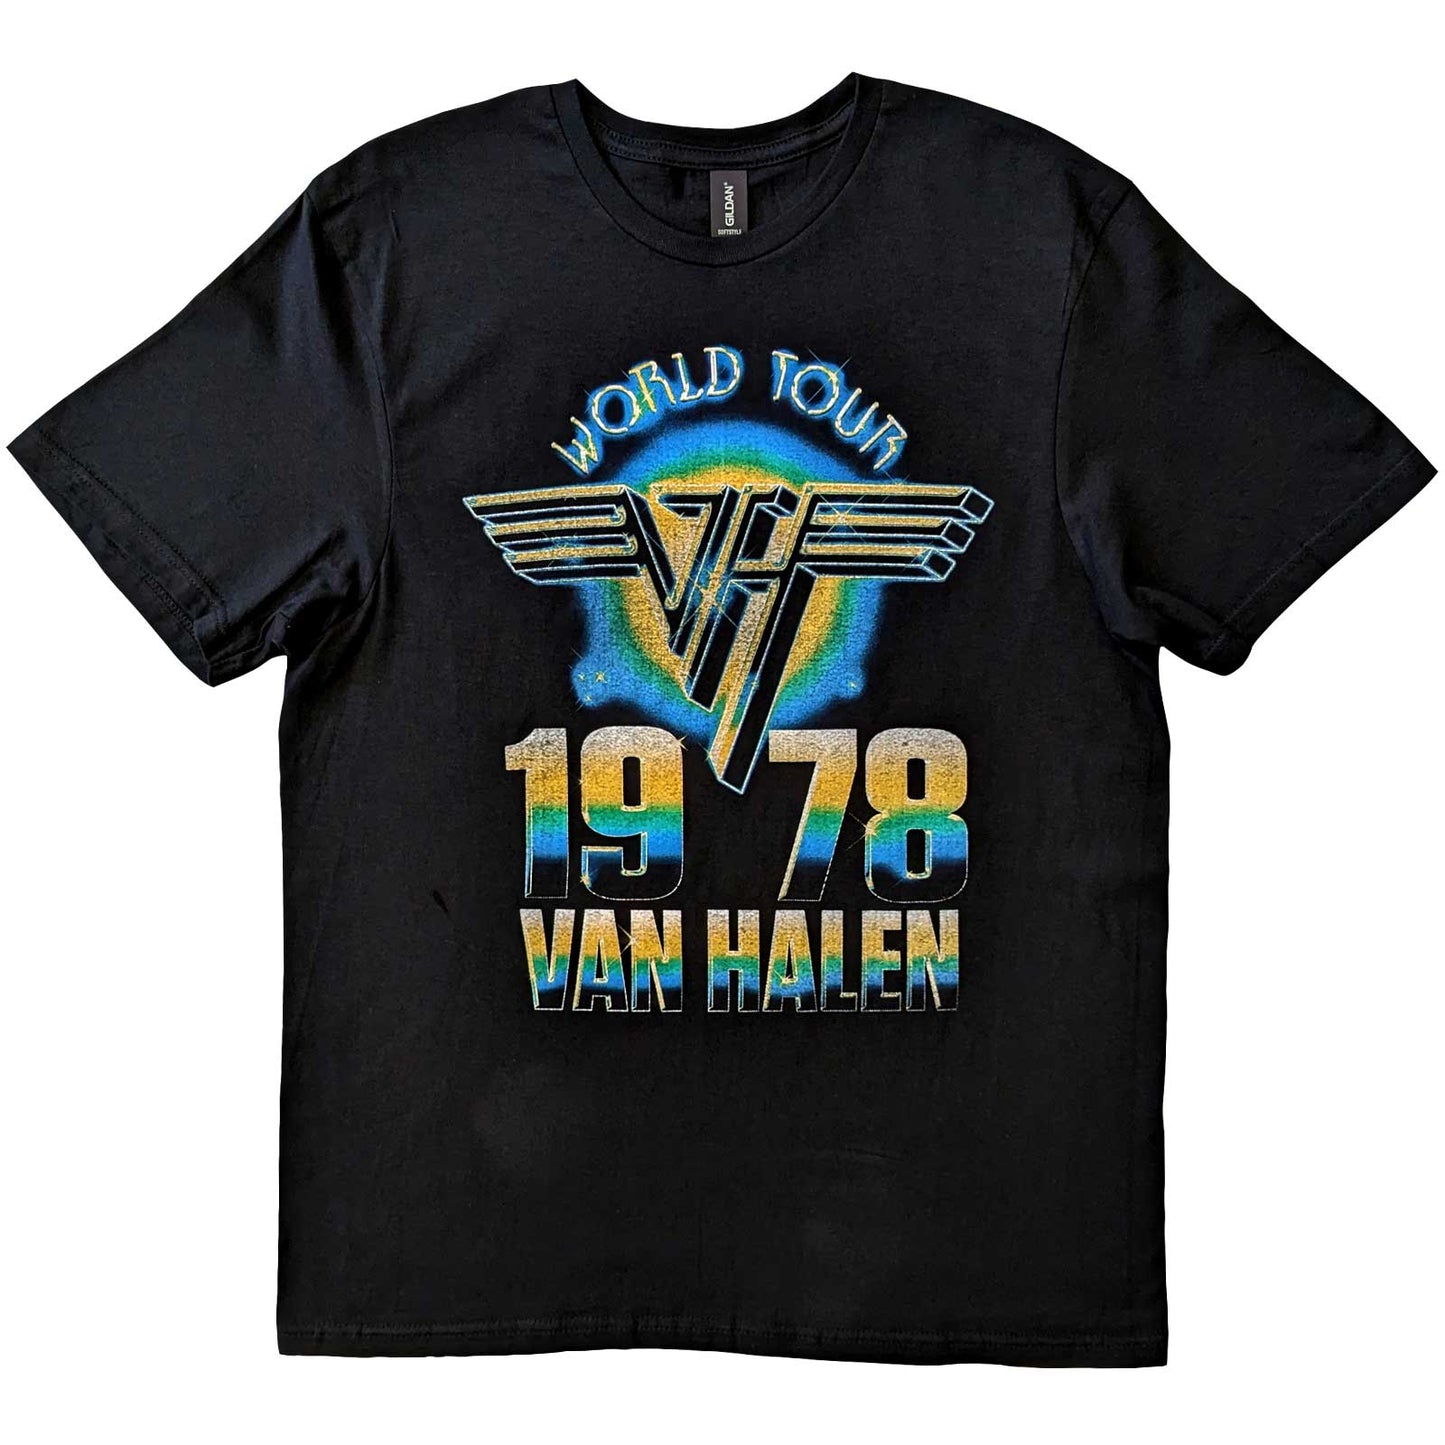 Van Halen T-Shirt: World Tour '78